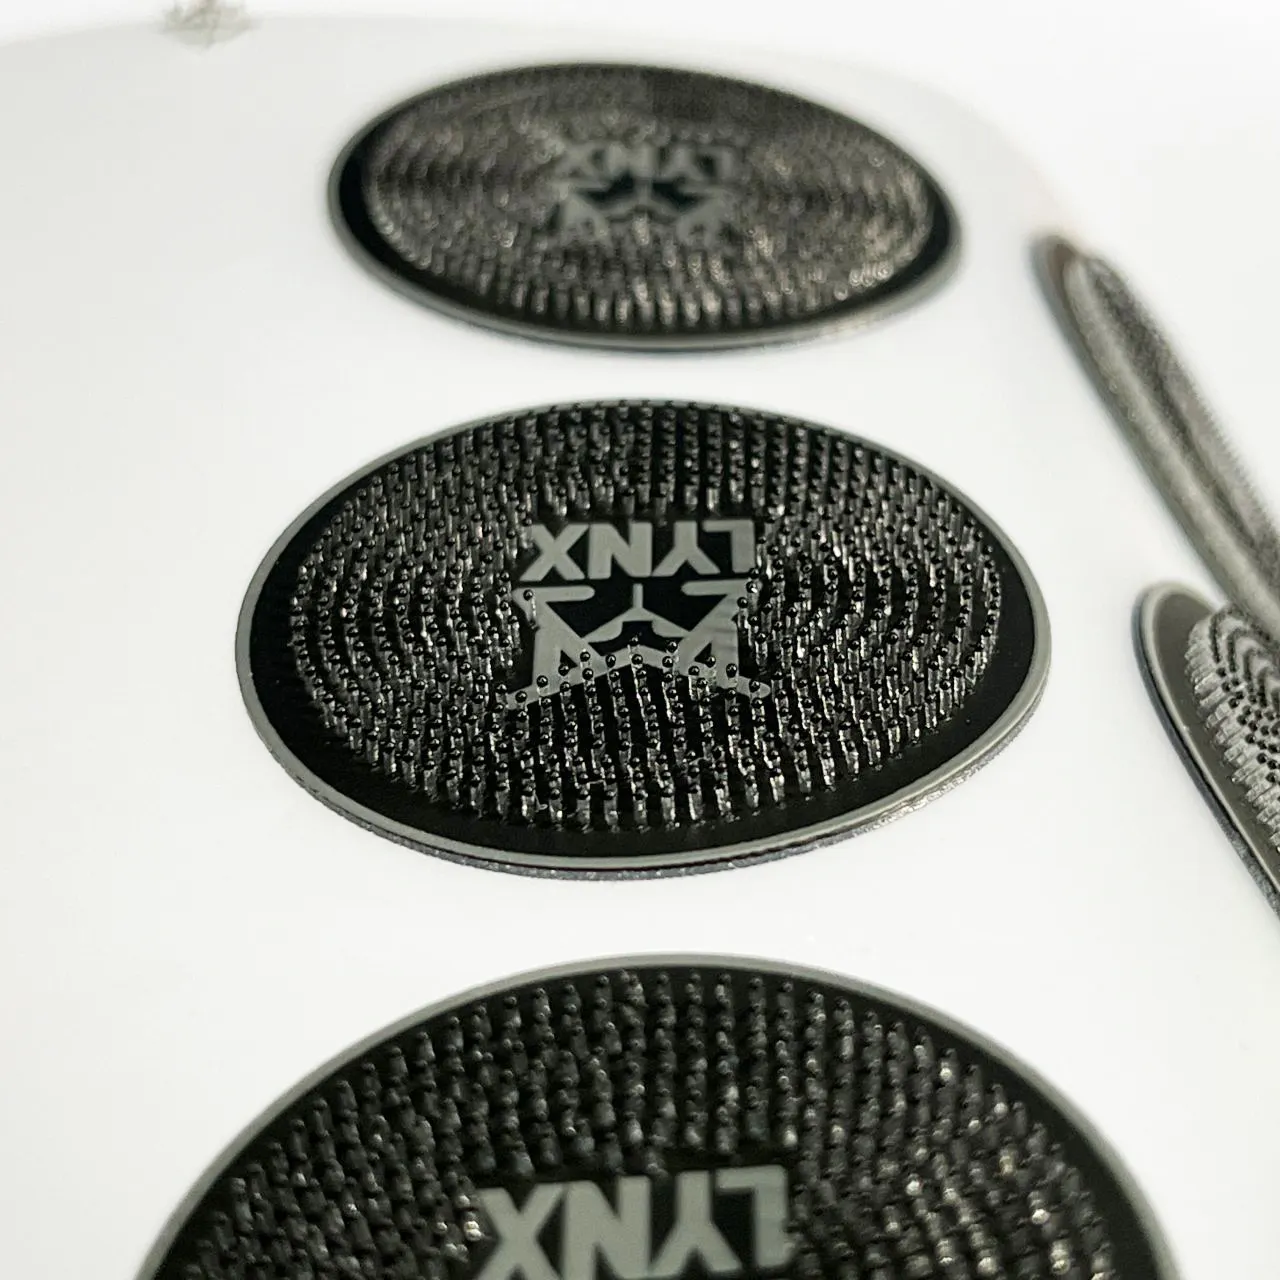 Özel yüksek kaliteli silikon kauçuk ısı Transfer baskı 3D yumuşak kauçuk Logo kauçuk conta sıcak damgalama fırça silikon etiket